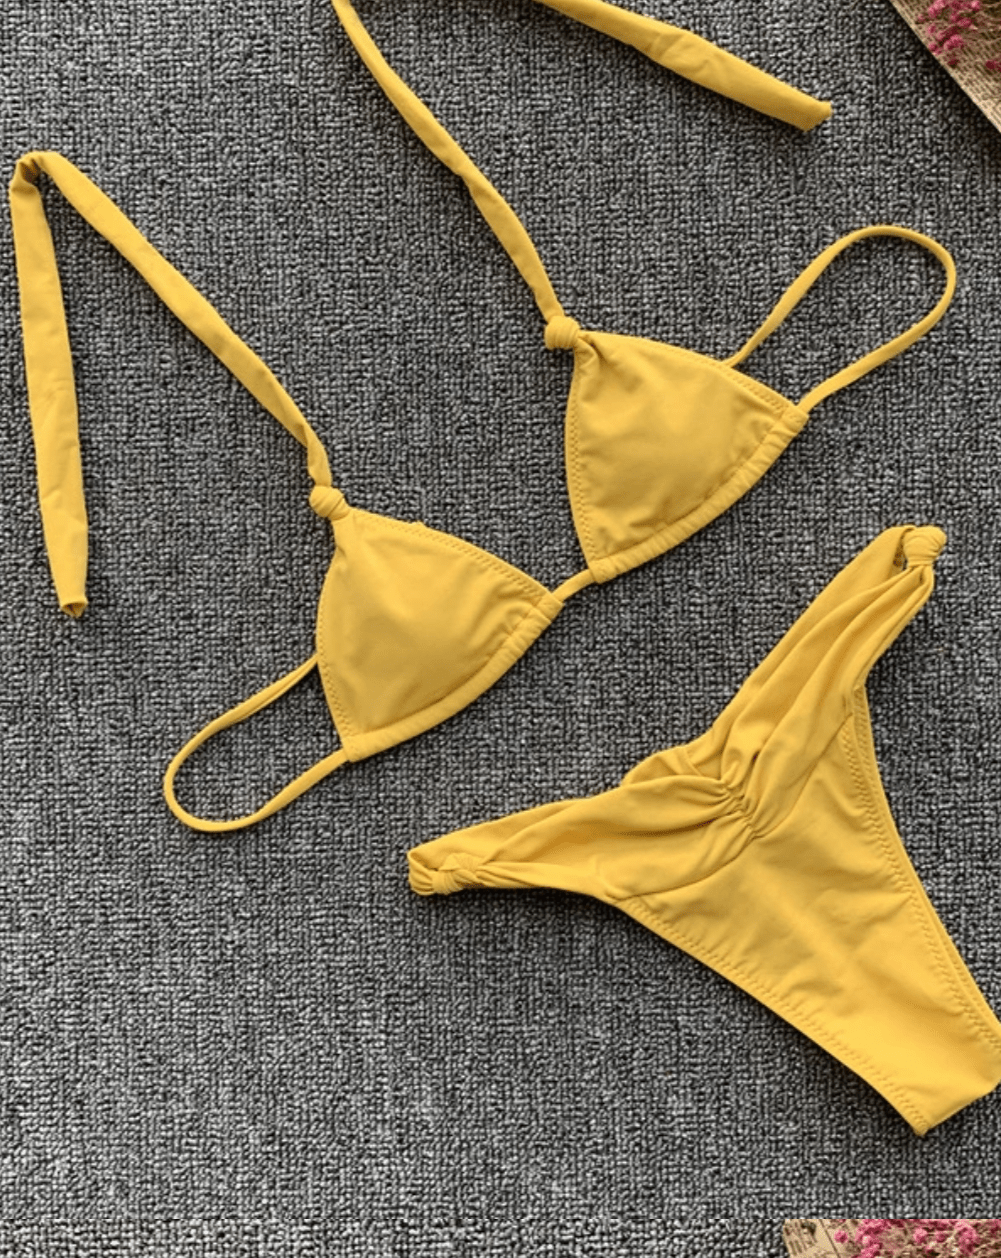 Petite Triangle Bikini in Mustard